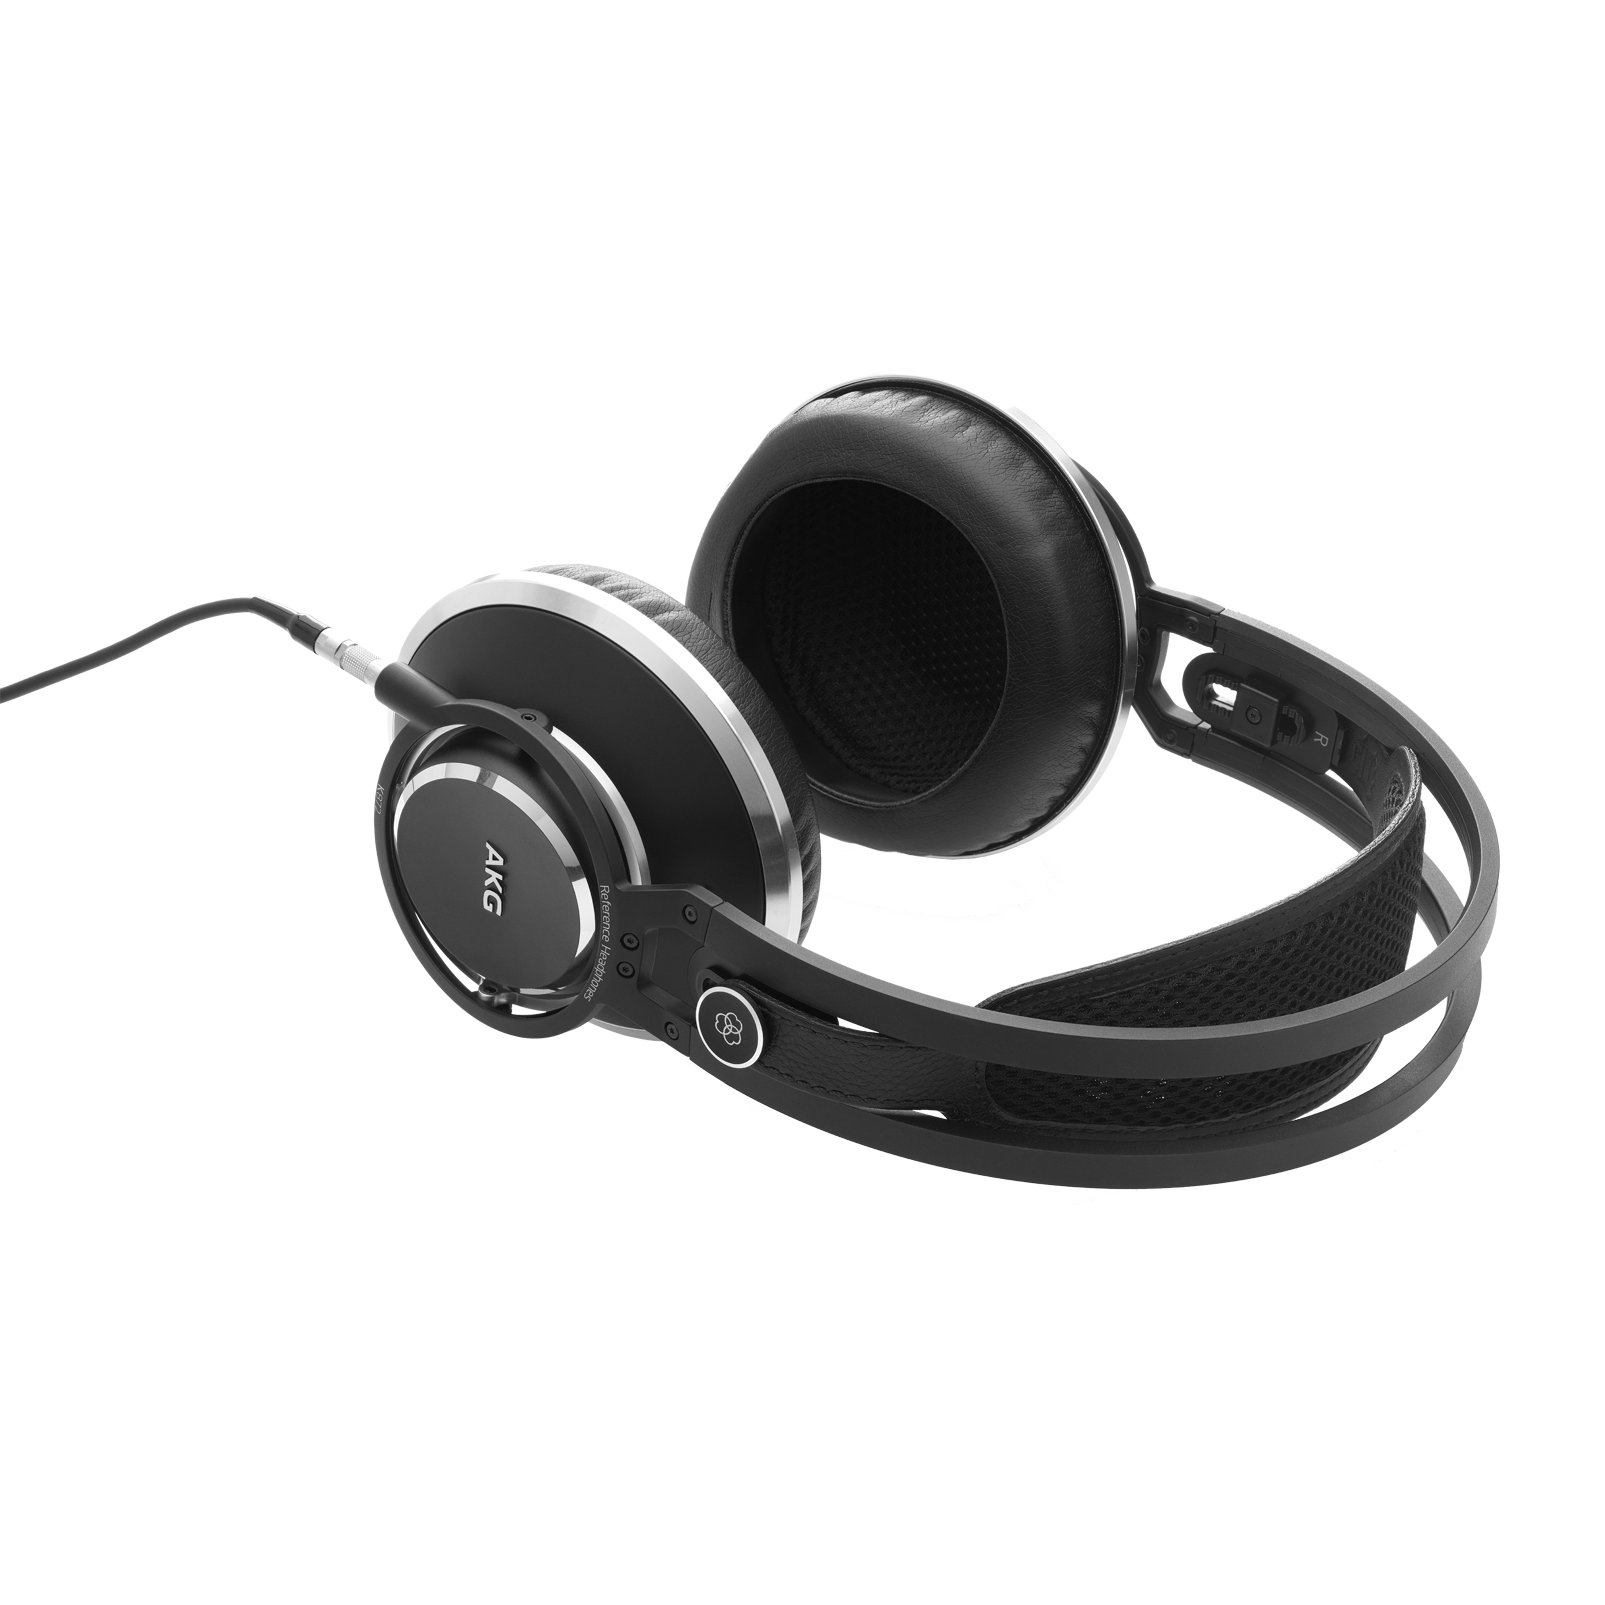 K872 - Black - Master reference closed-back headphones - Detailshot 2